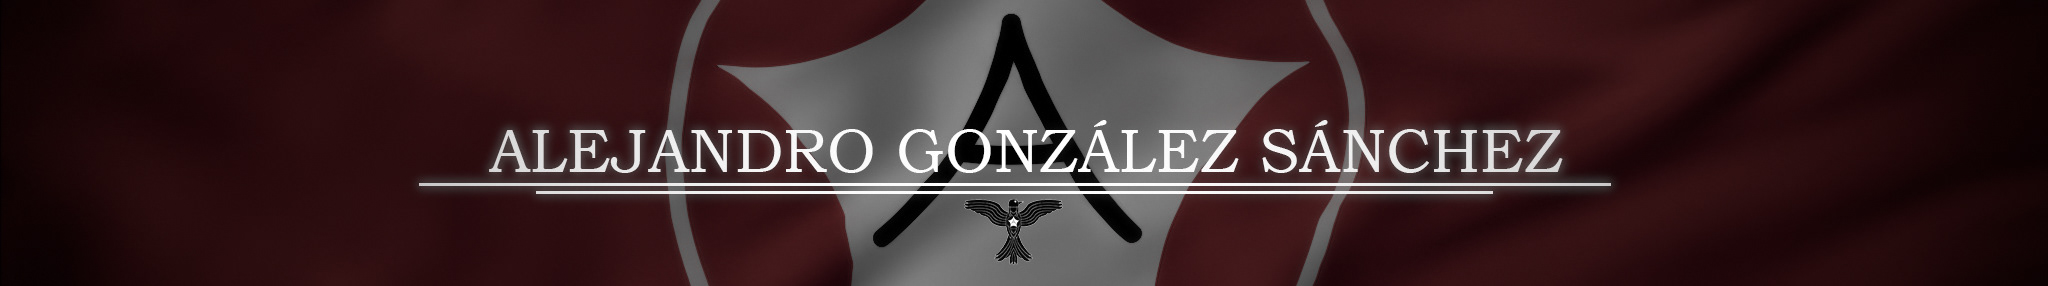 Баннер профиля Alejandro González Sánchez